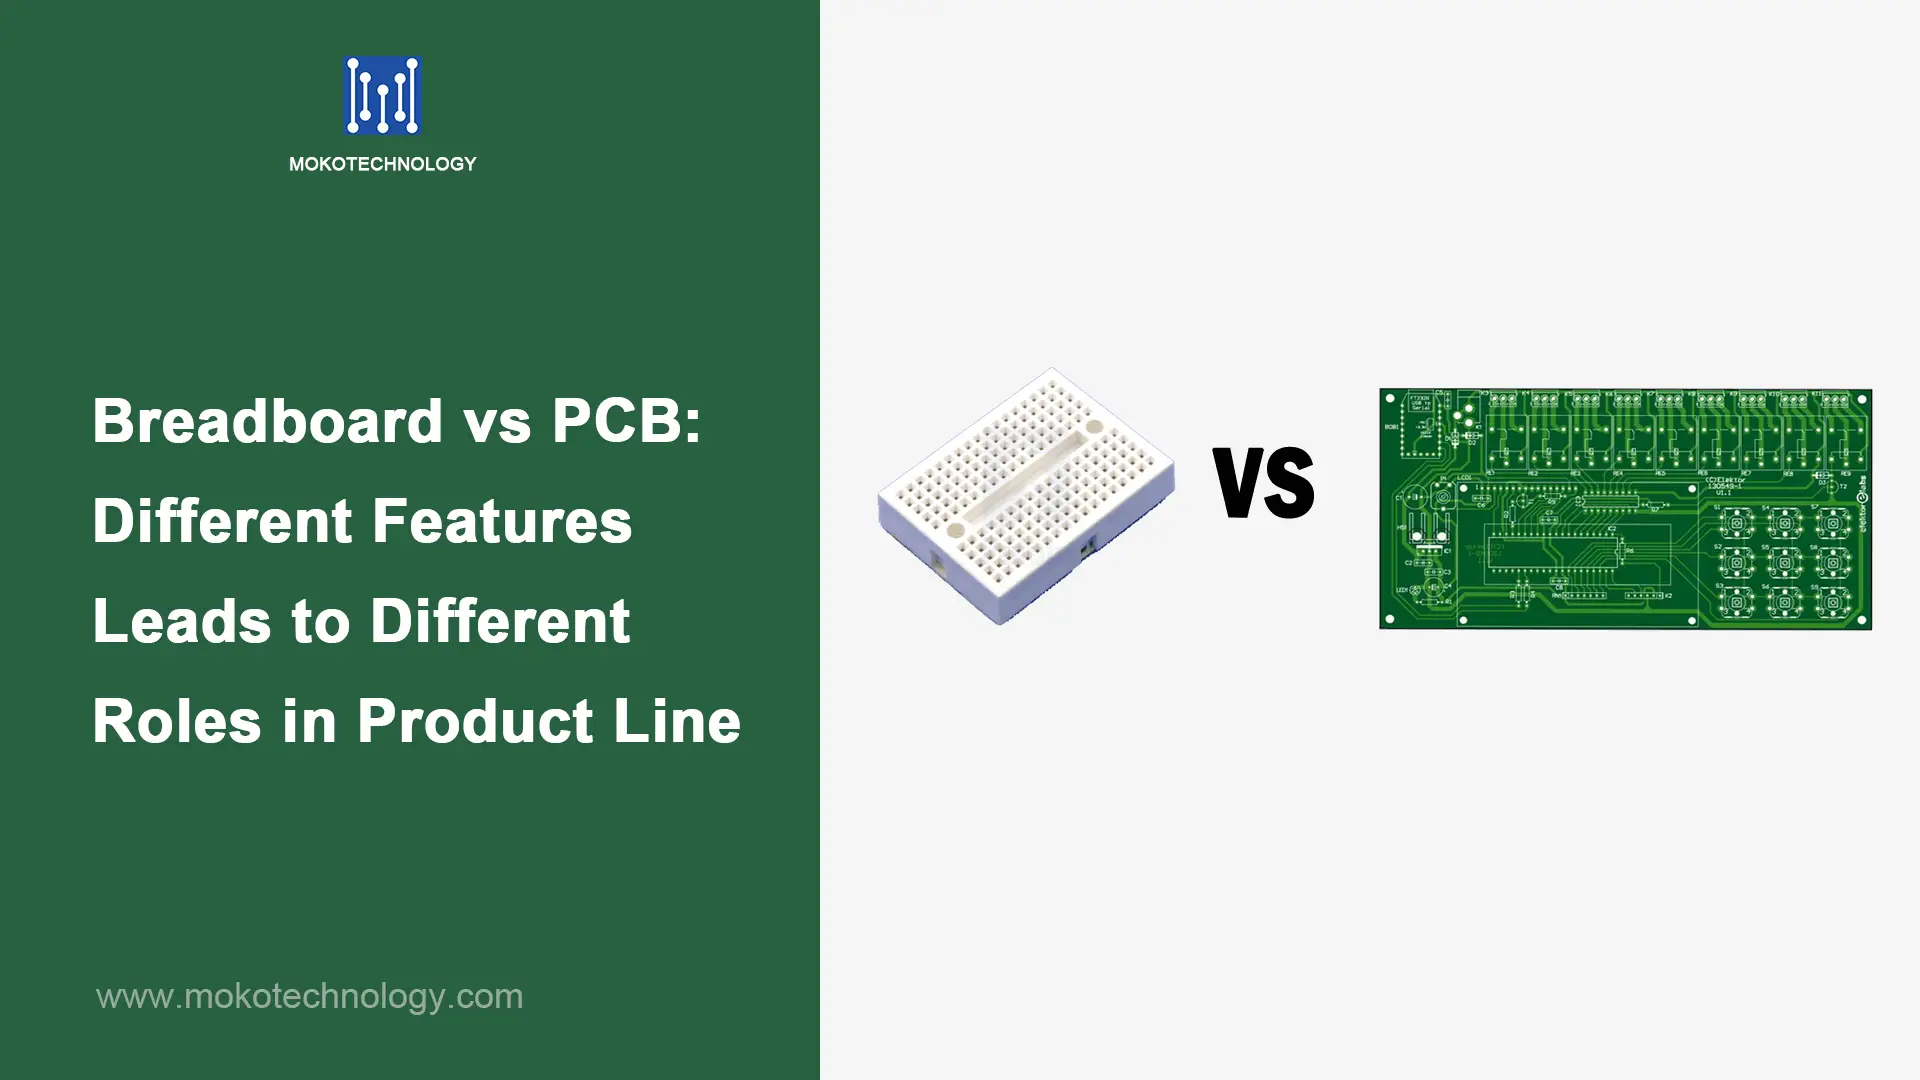 브레드보드와 PCB의 서로 다른 기능으로 인해 제품 라인에서 서로 다른 역할이 발생함